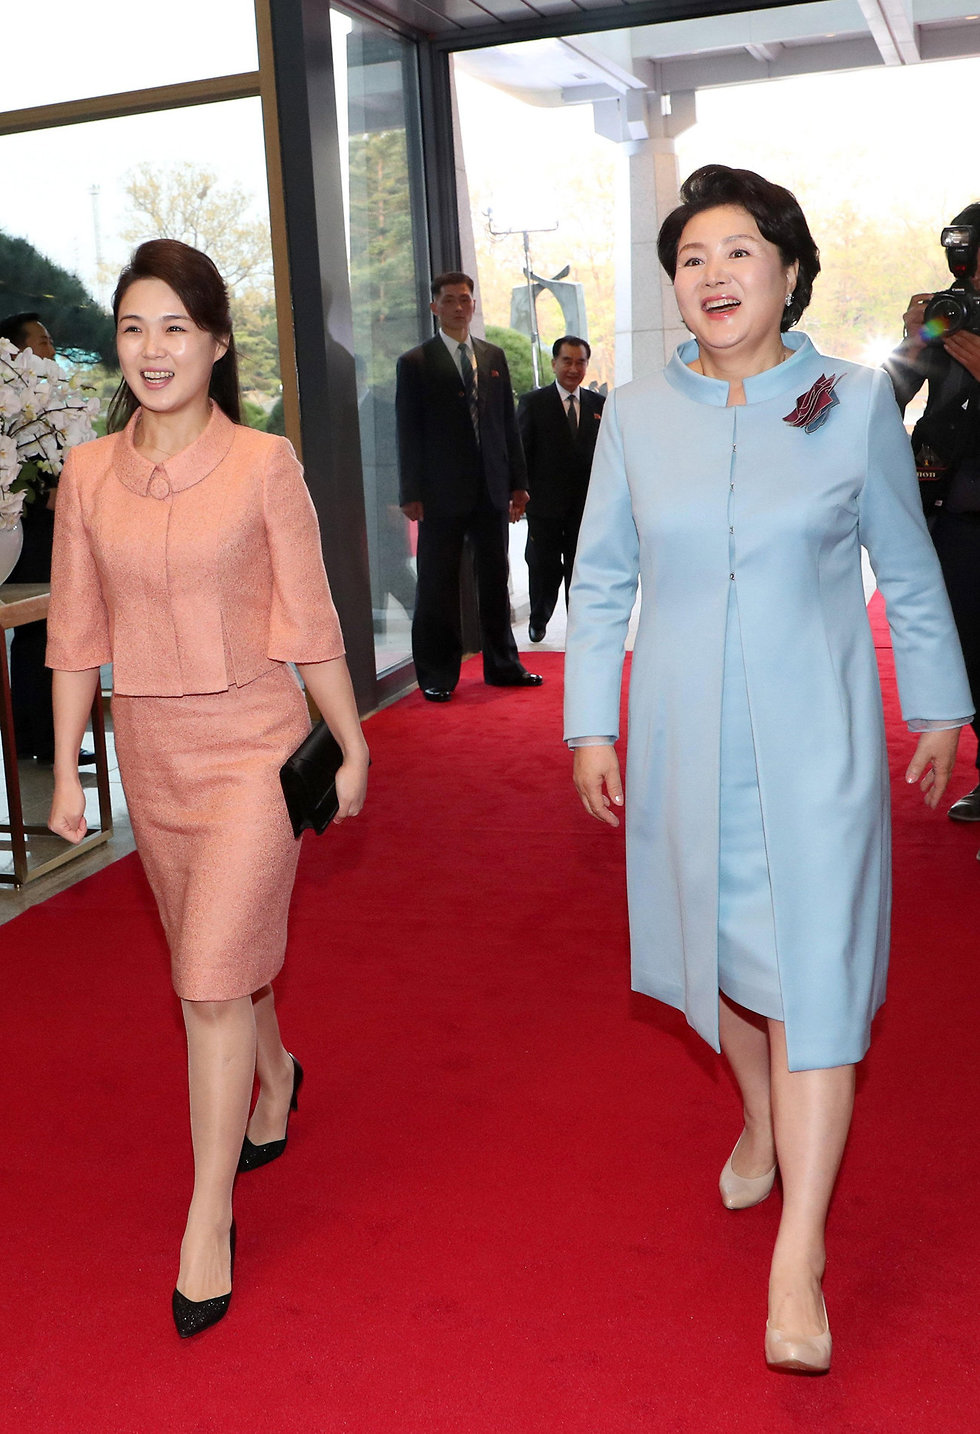 רי סול ג'ו אשתו של קים ג'ונג און קים ג'ונג סוק אשתו של מון ג'אה אין דרום קוריאה צפון קוריאה (צילום: EPA)